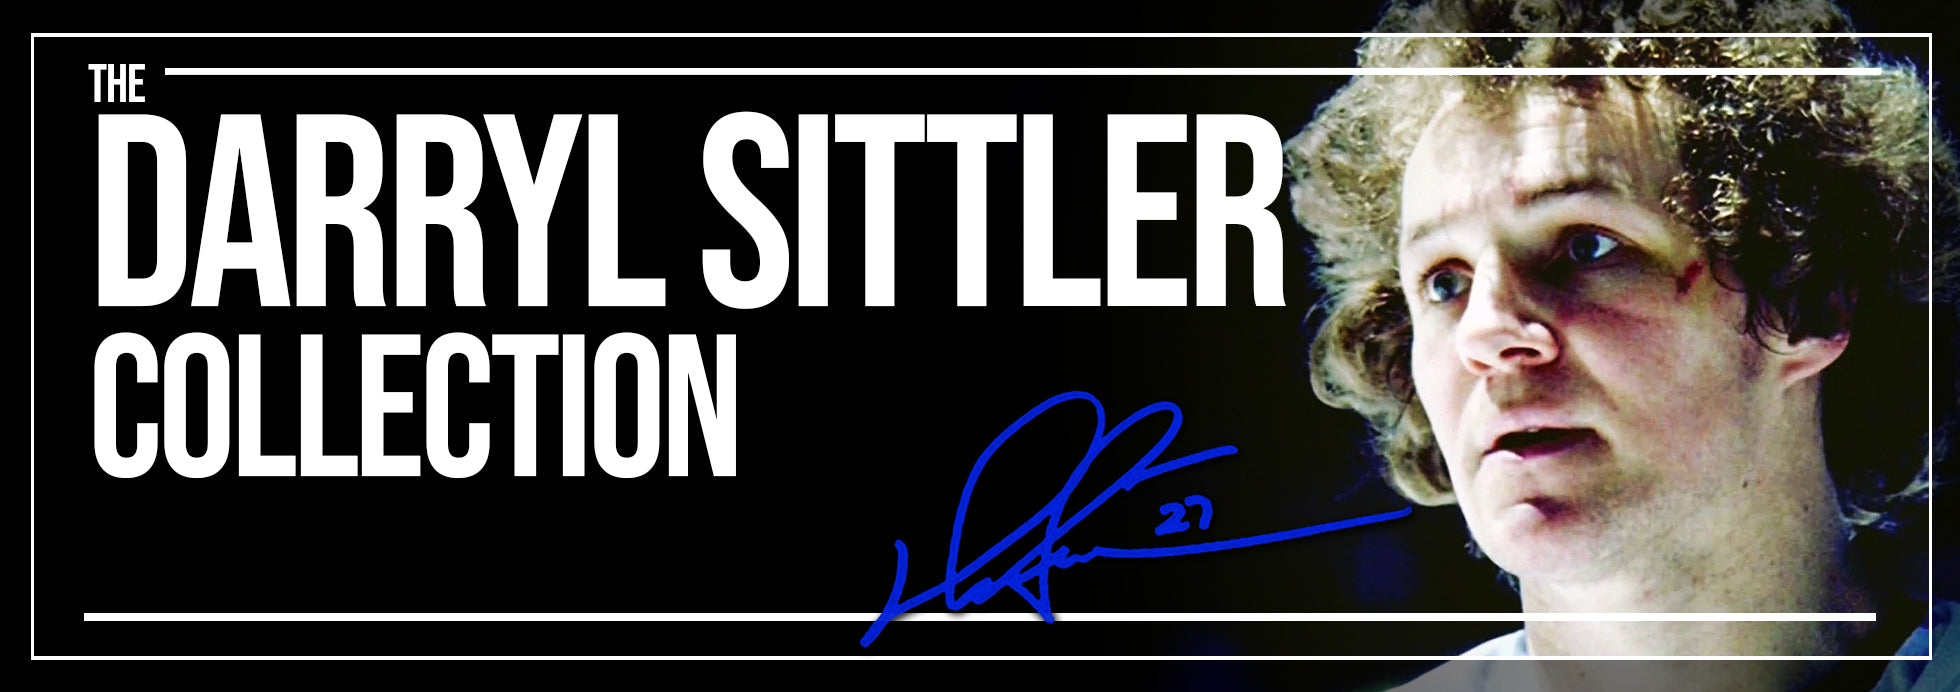 Darryl Sittler Collection Banner